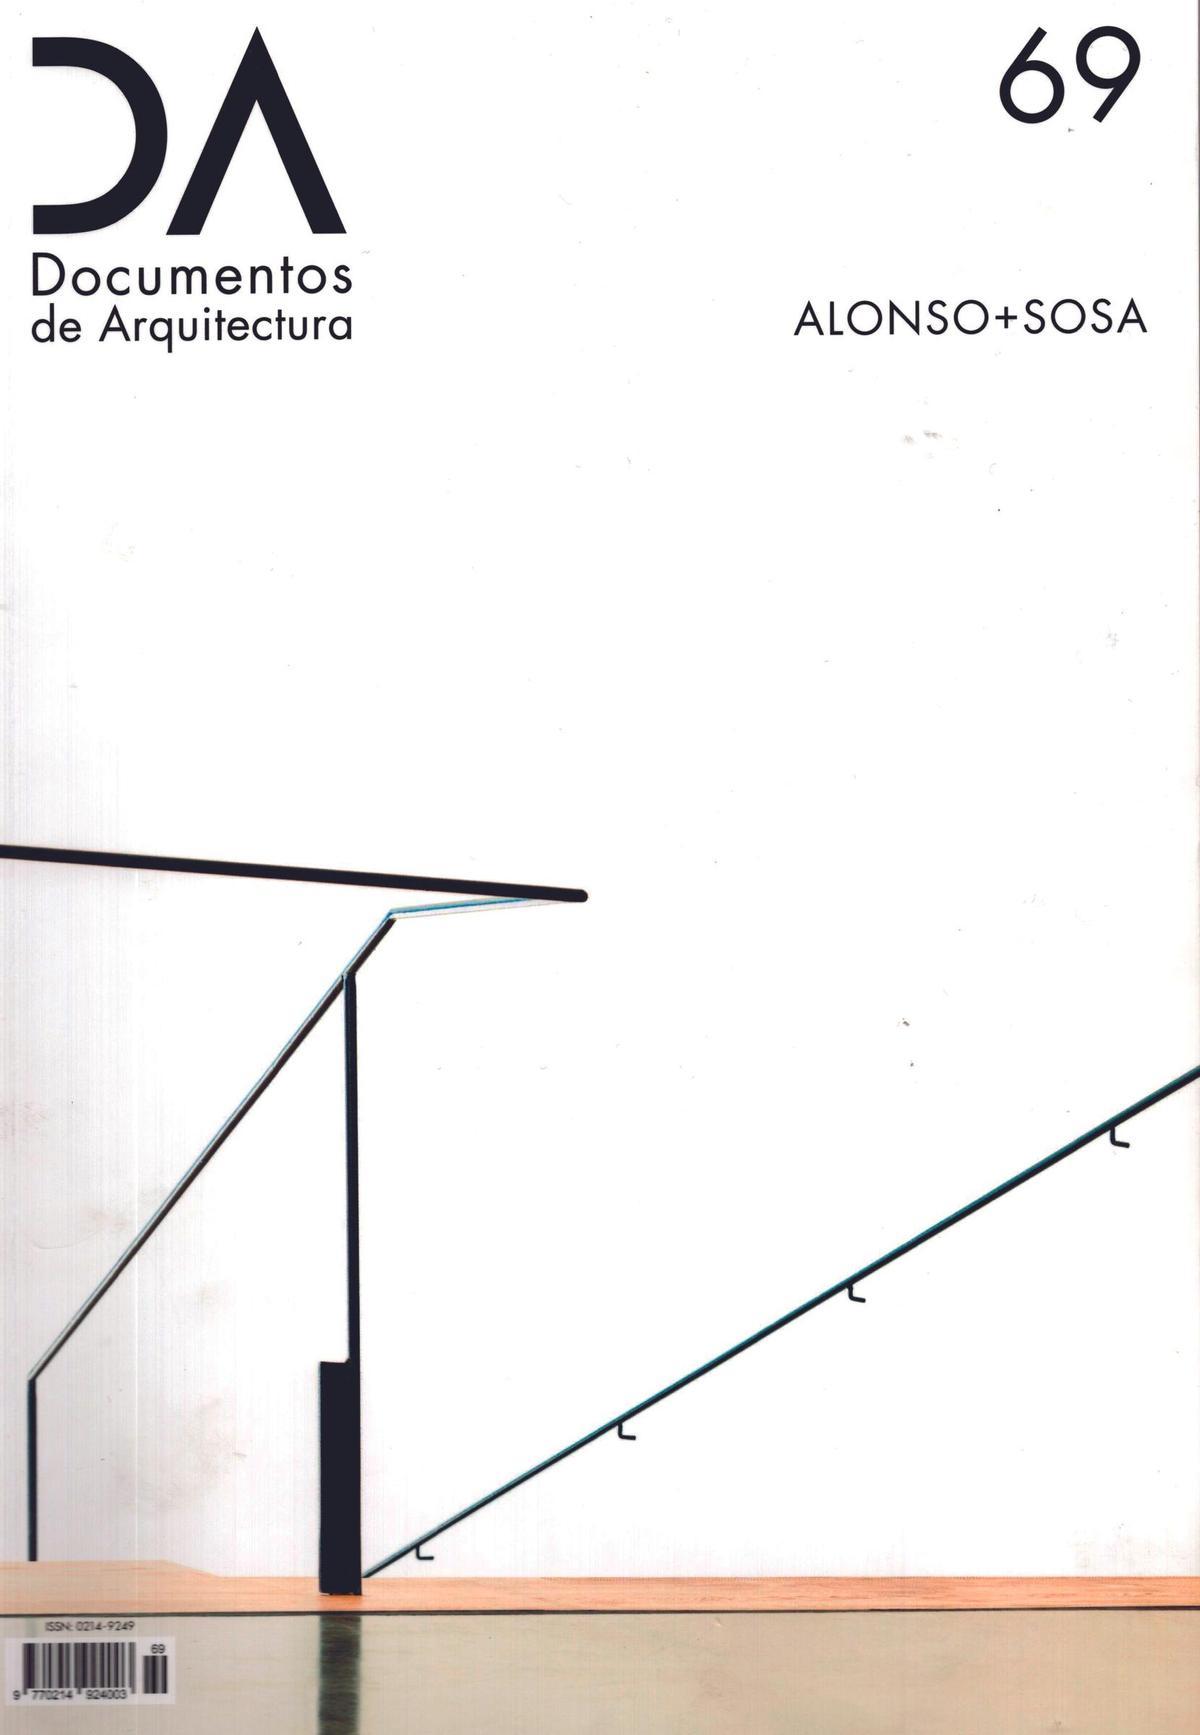 Portada de la revista 'Documentos de Arquitectura', en el número 'Alonso+Sosa'